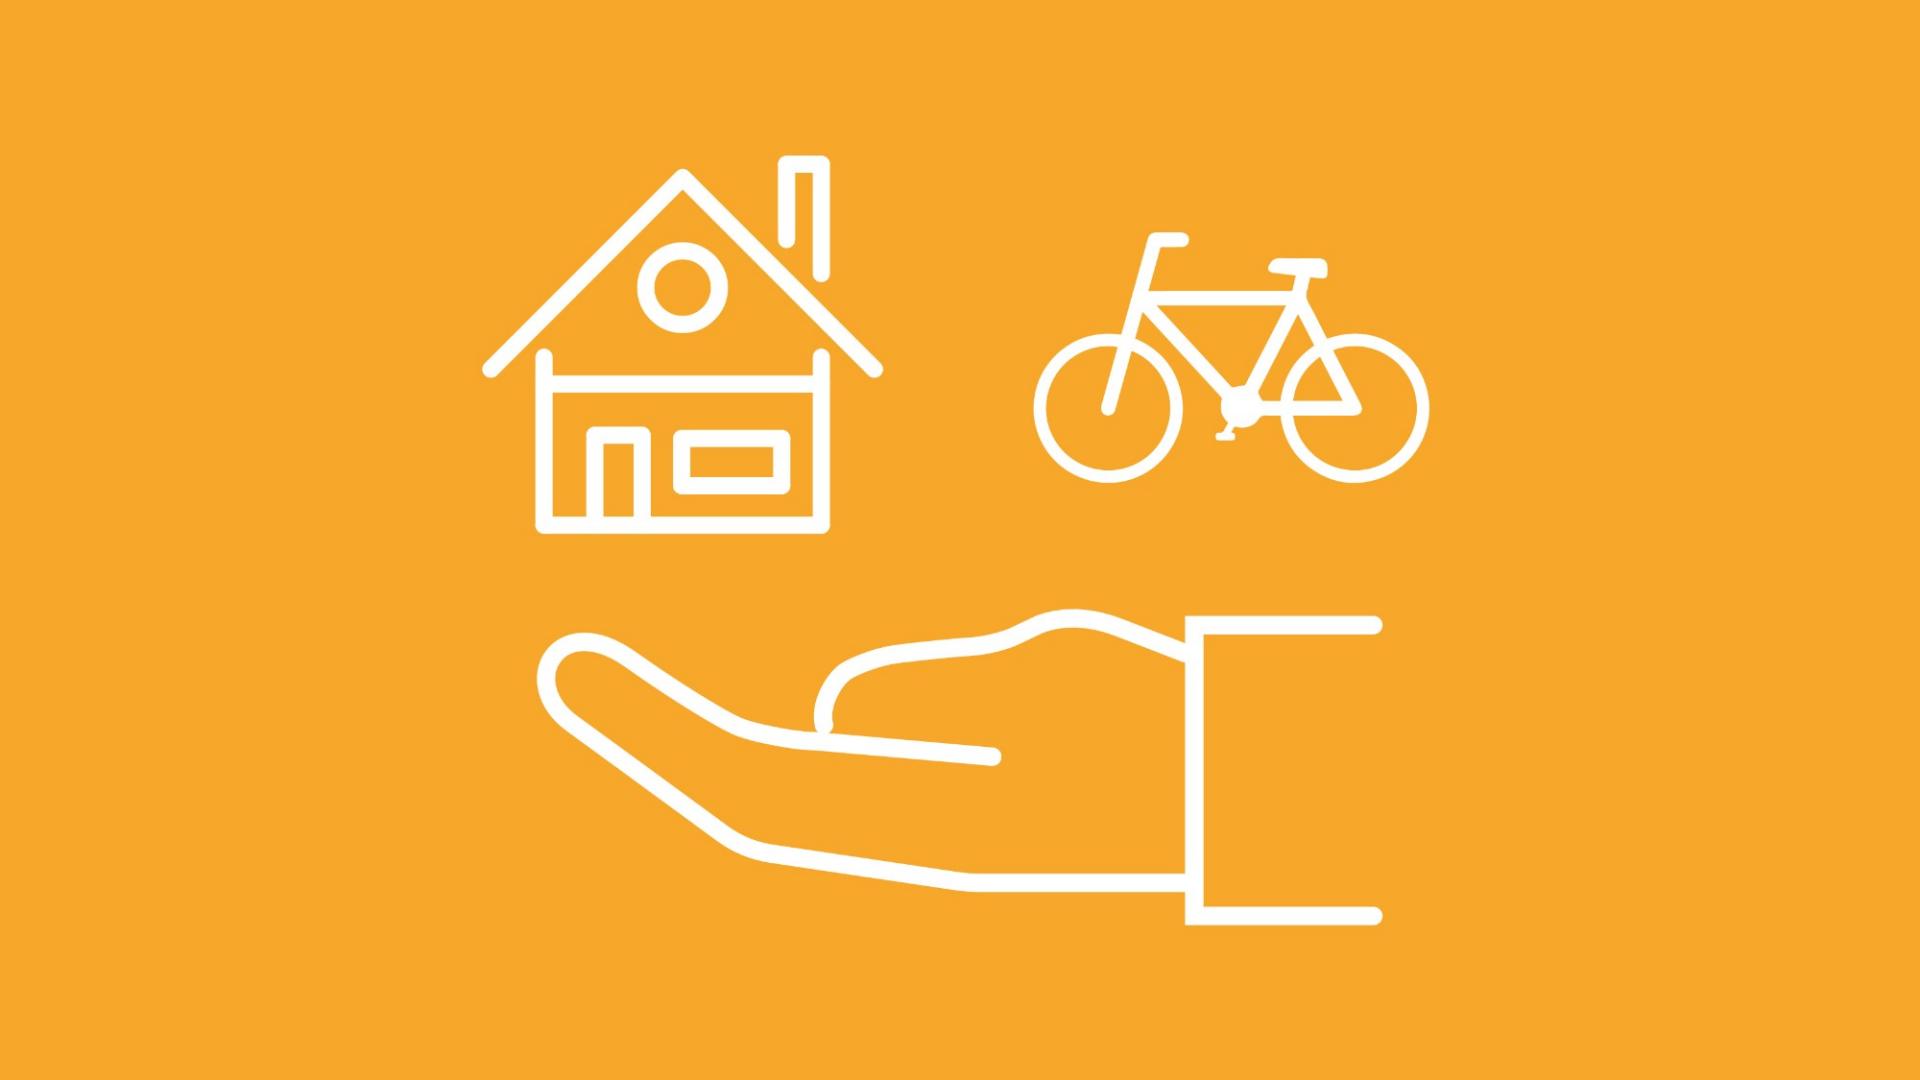 Unter einem Haus und einem Fahrrad ist eine Hand abgebildet, um darzustellen, ob sich eine Hausratversicherung für das Fahrrad lohnt.